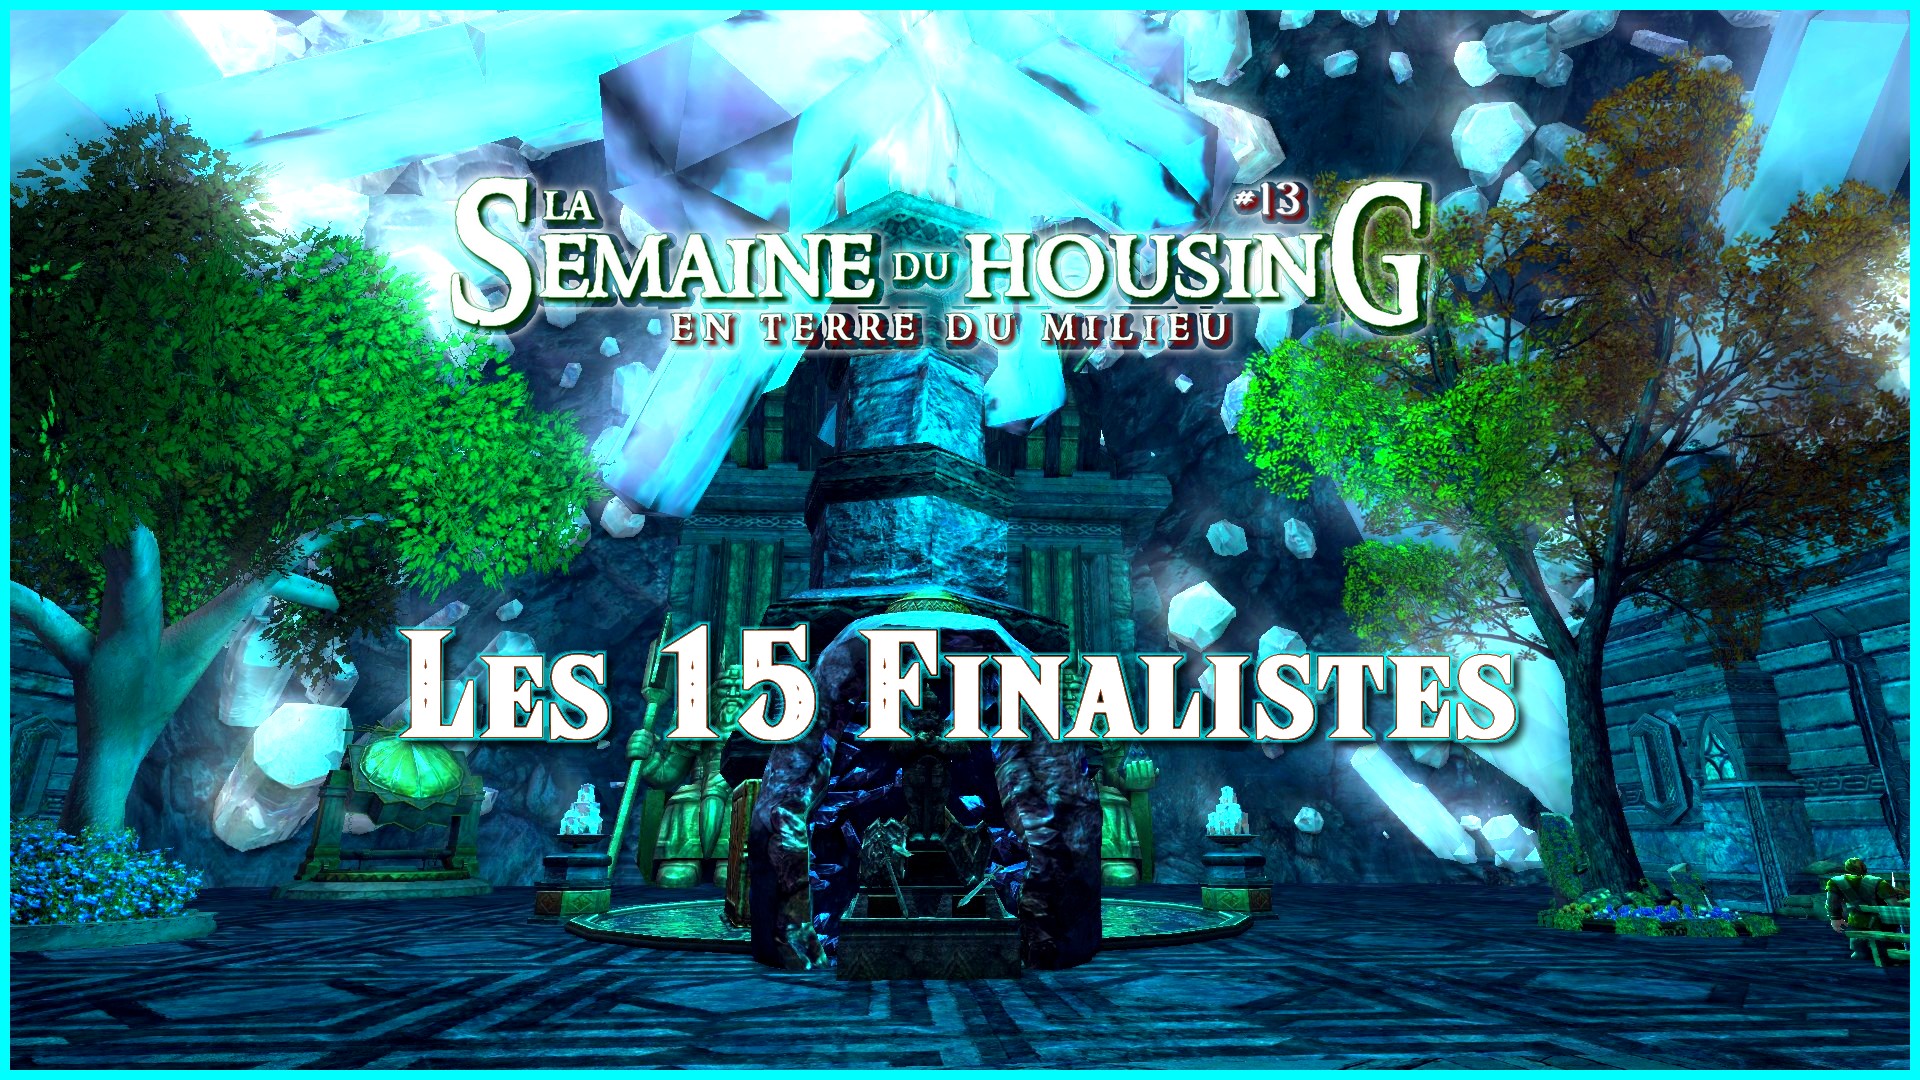 Semaine du Housing #13 – Les 15 finalistes !